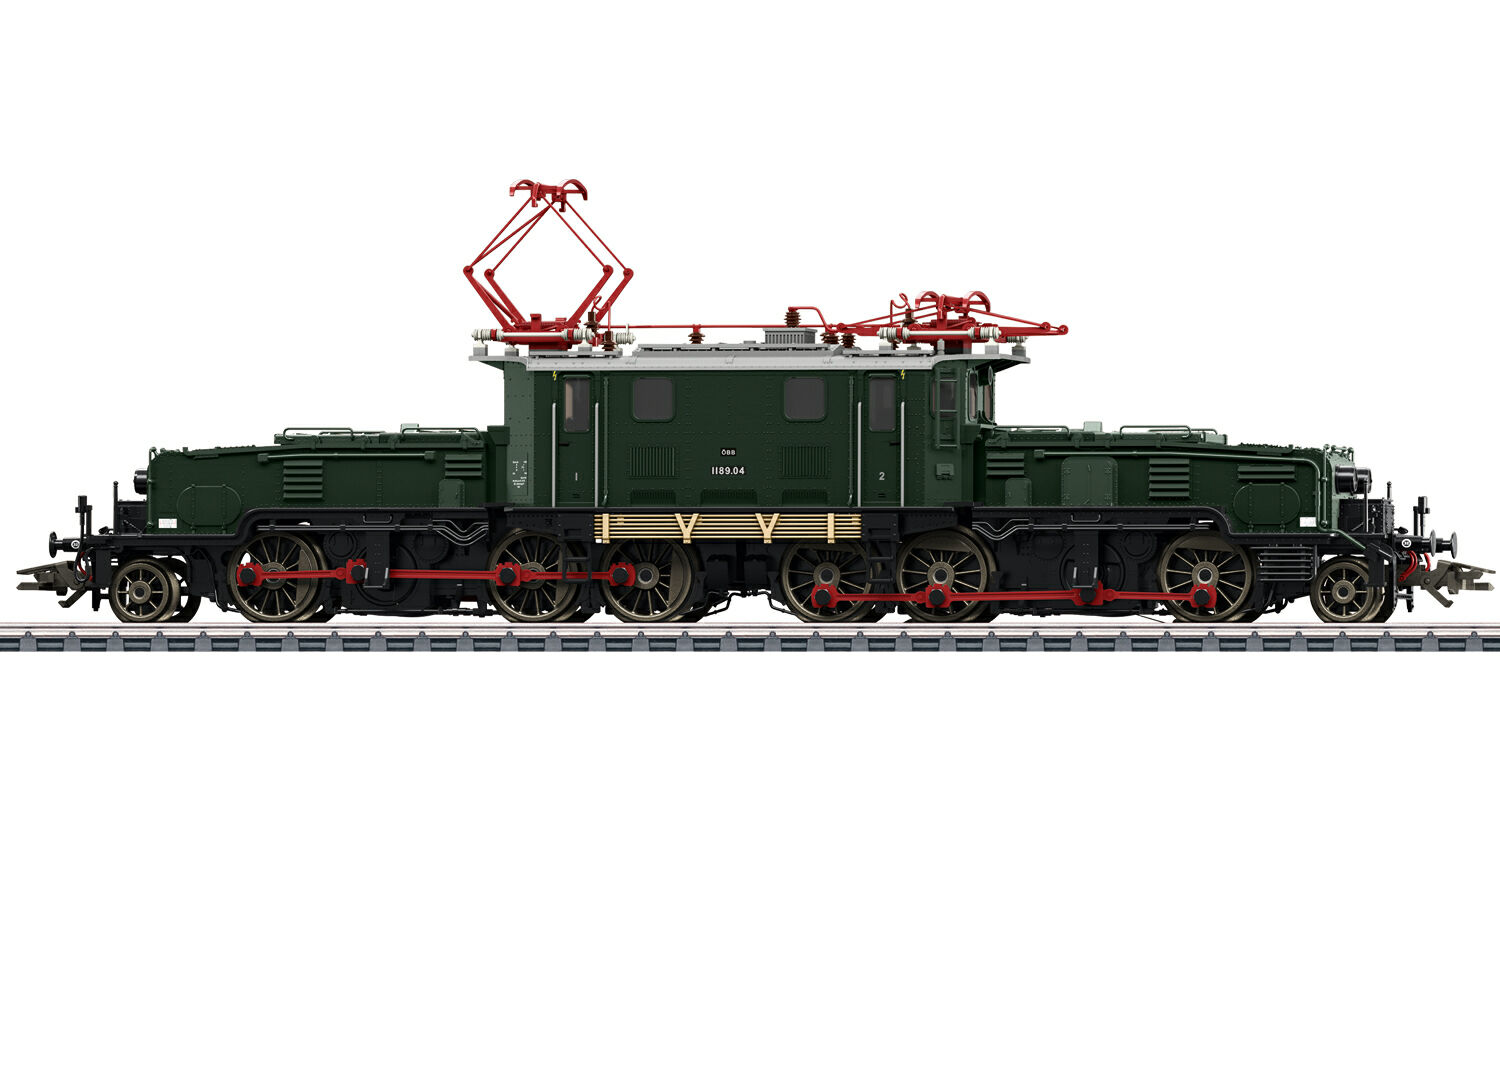 Franje George Eliot Macadam Märklin Model Railways | For Beginners, Professionals & Collectors